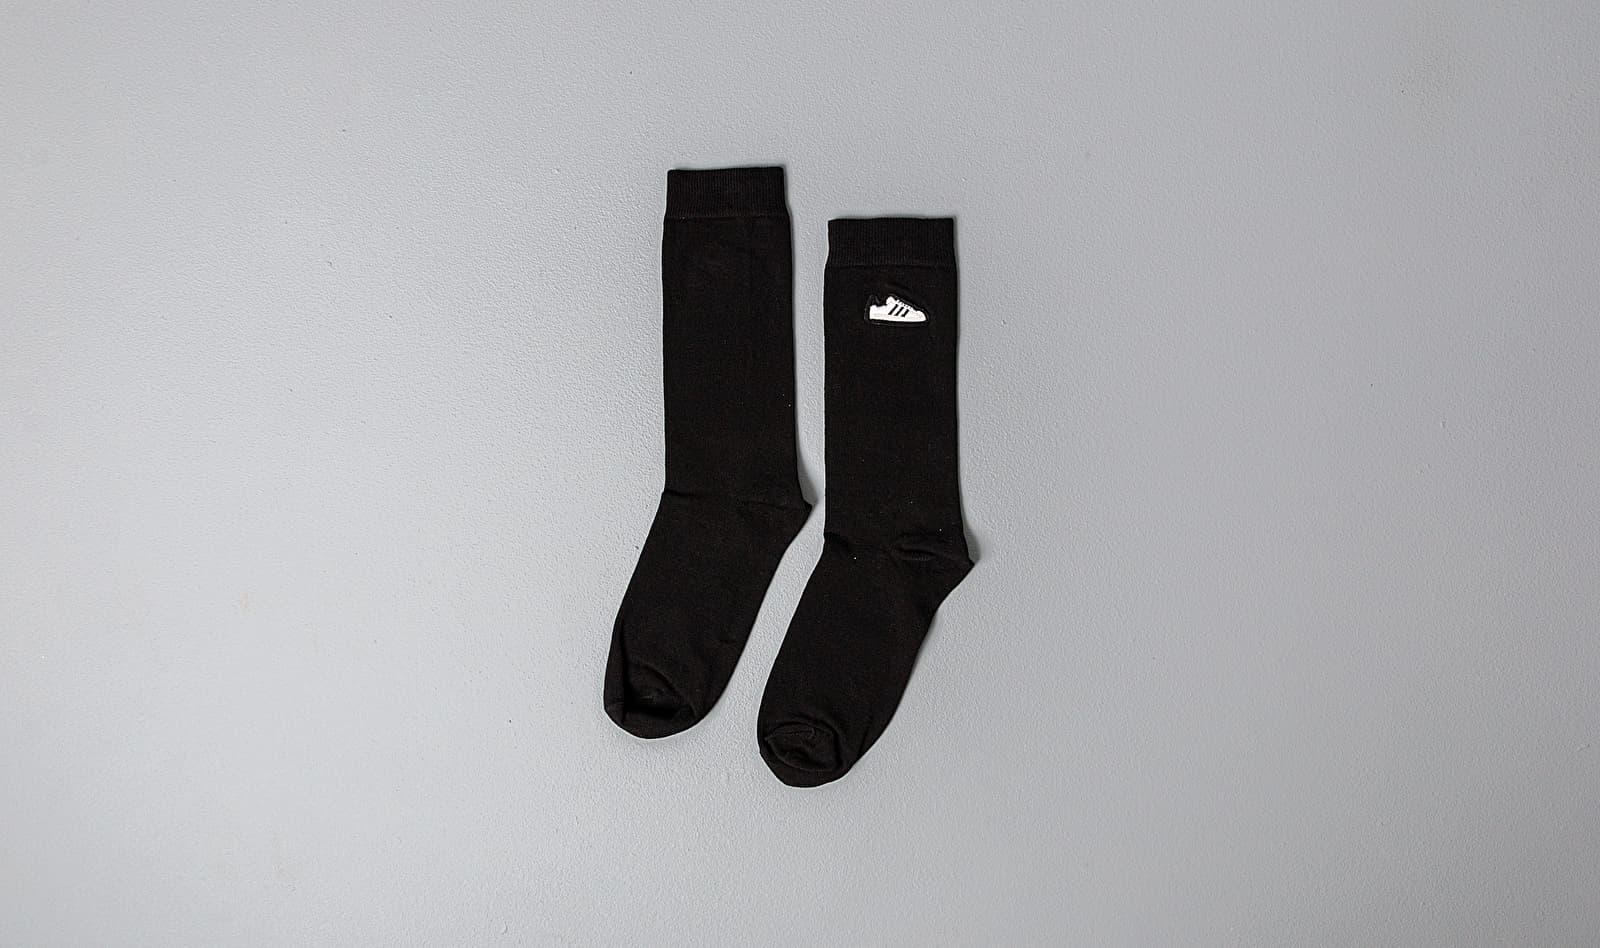 Buy > black adidas socks > in stock